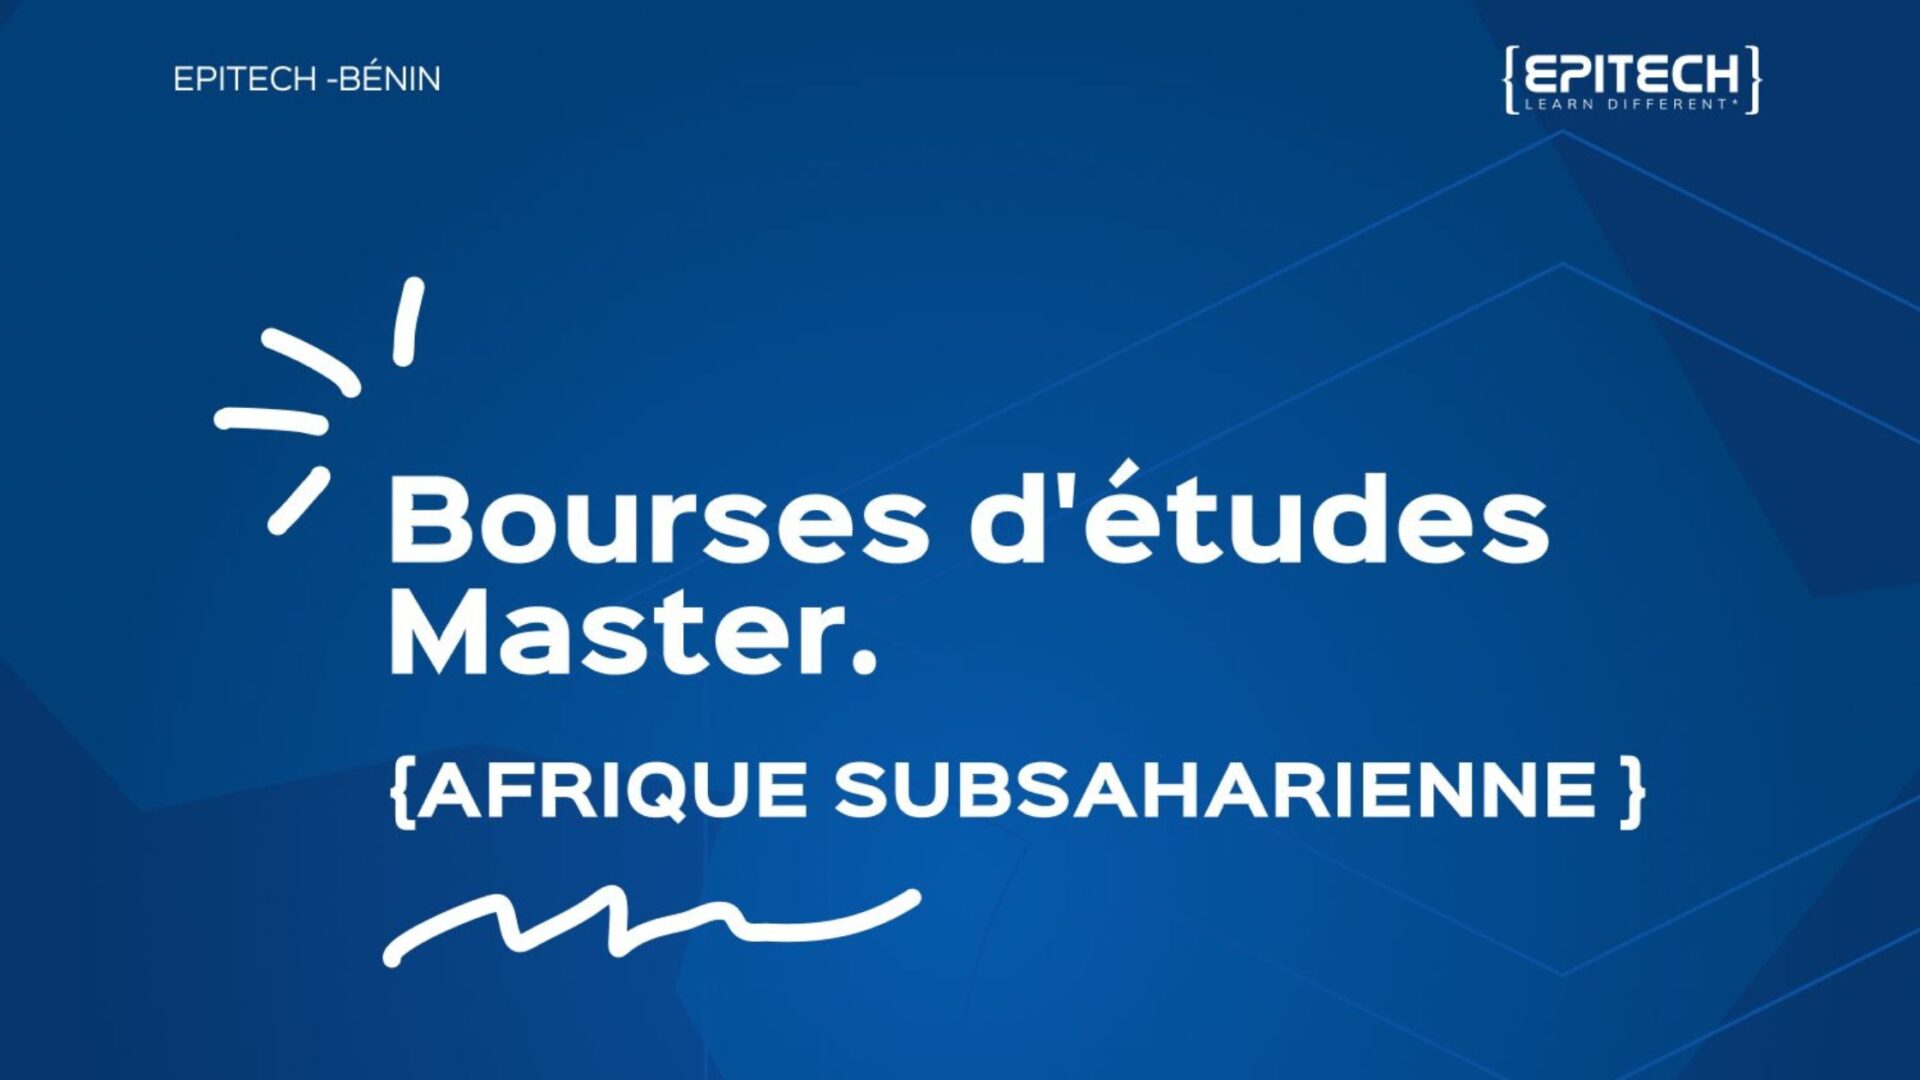 You are currently viewing [Opportunité] Bourses de Master à Epitech Bénin